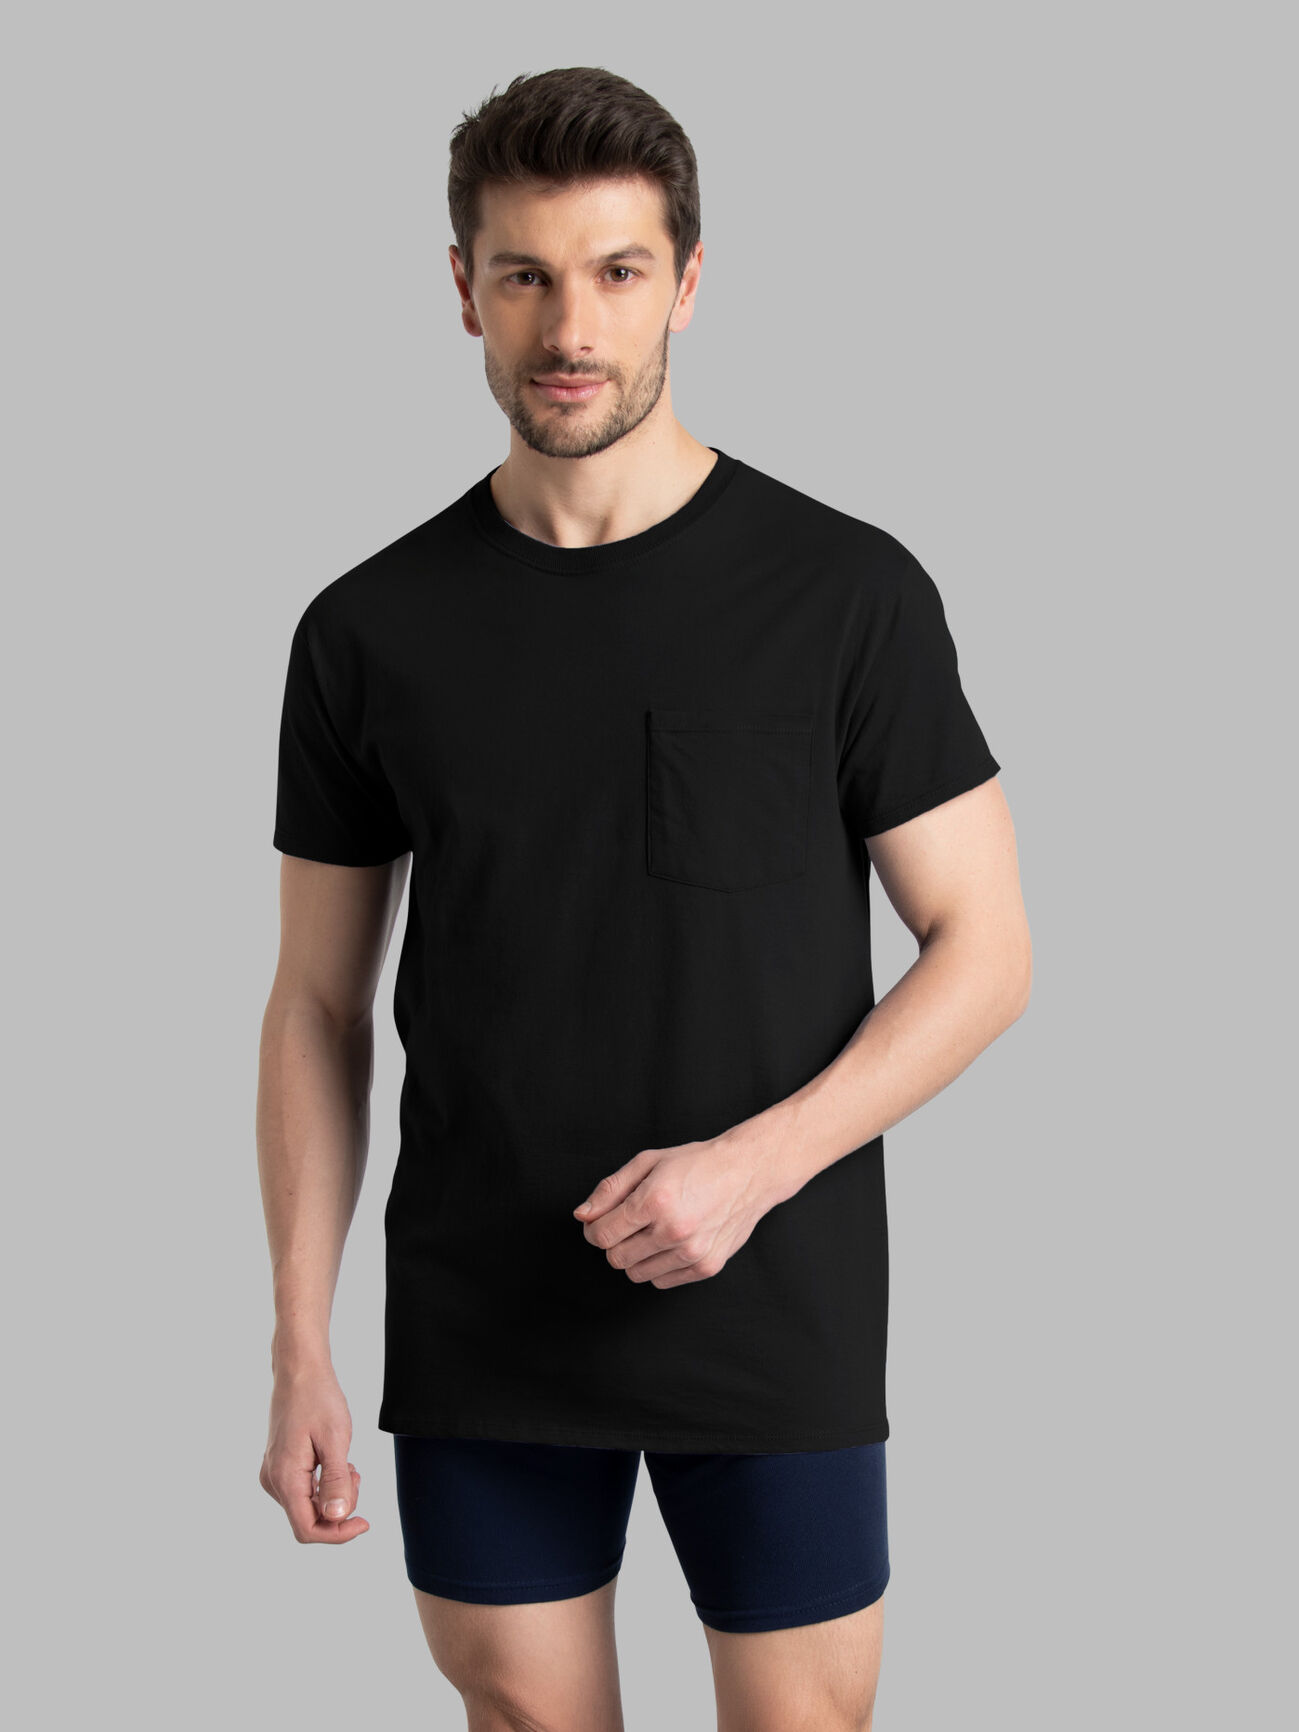 BLIVE Solid Men High Neck Black T-Shirt - Buy BLIVE Solid Men High